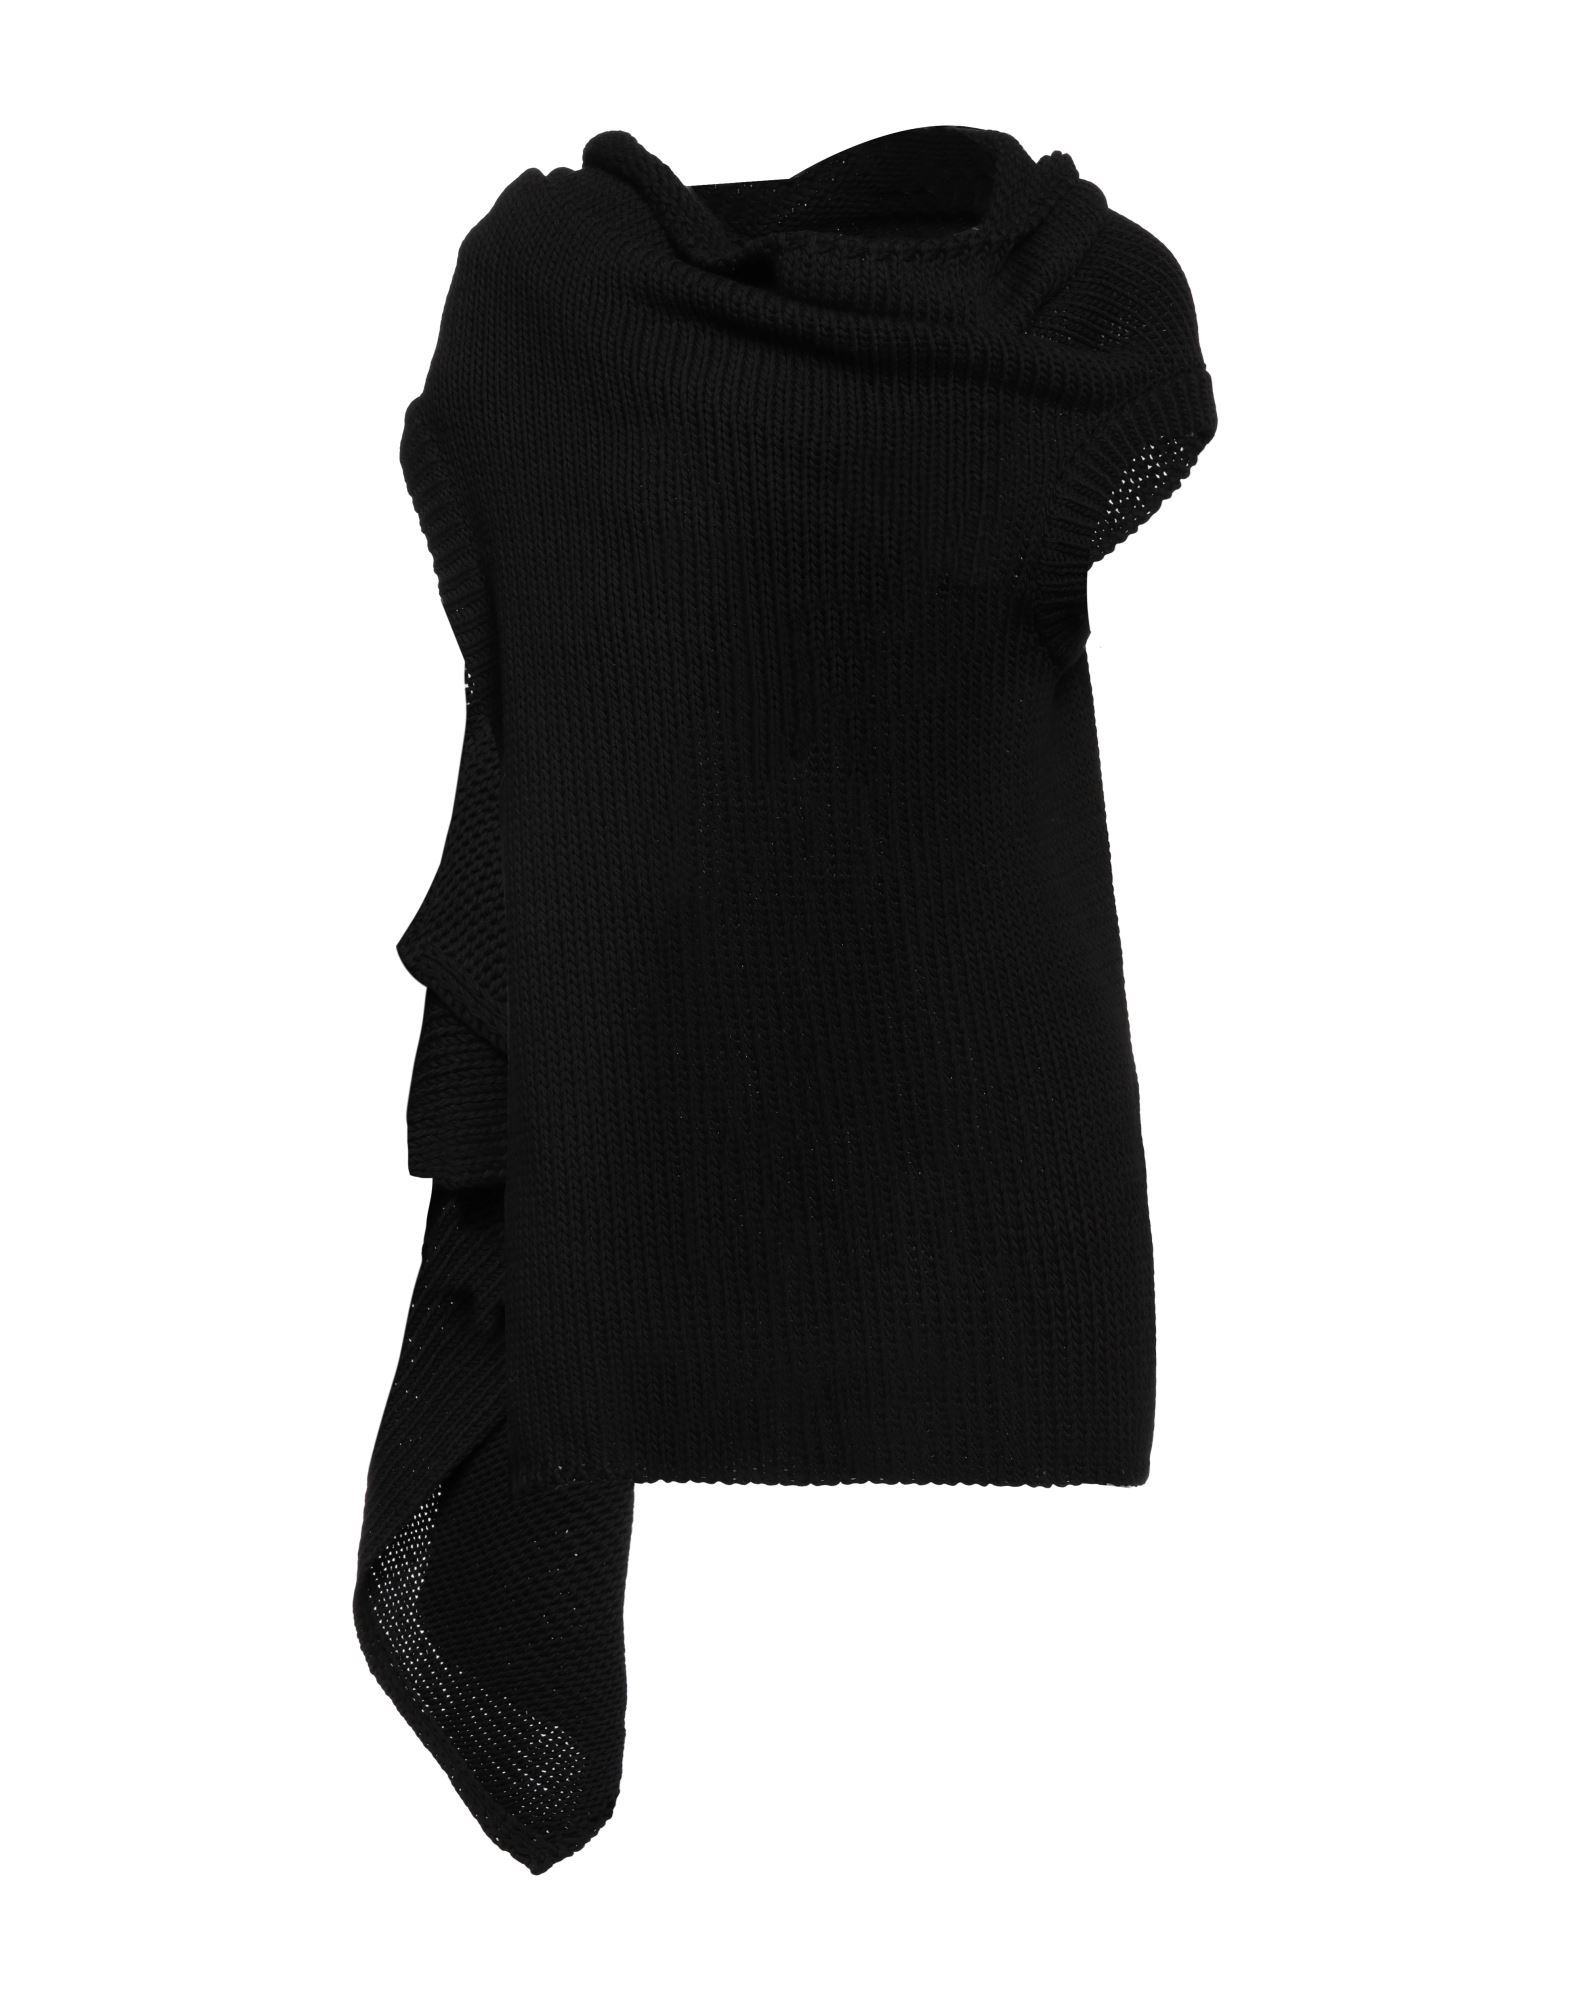 Ann Demeulemeester Sweaters In Black